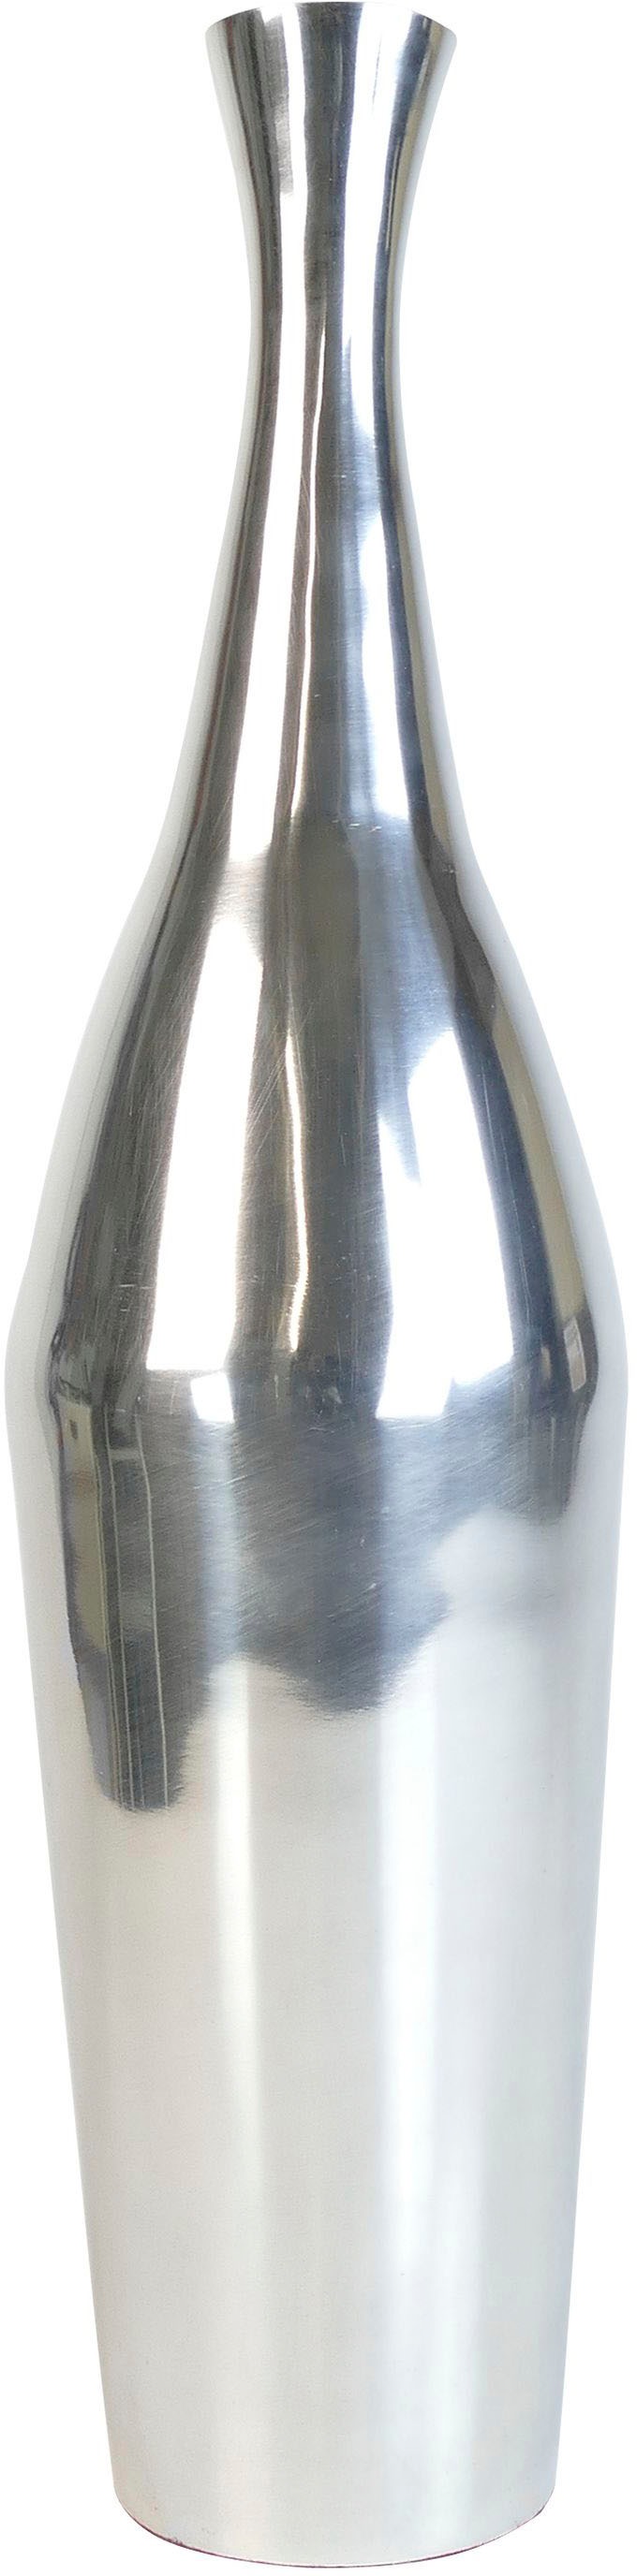 ARTRA Dekovase »Aluminiumvase \'Bottle\' M - Hoch, Dekoration« günstig kaufen